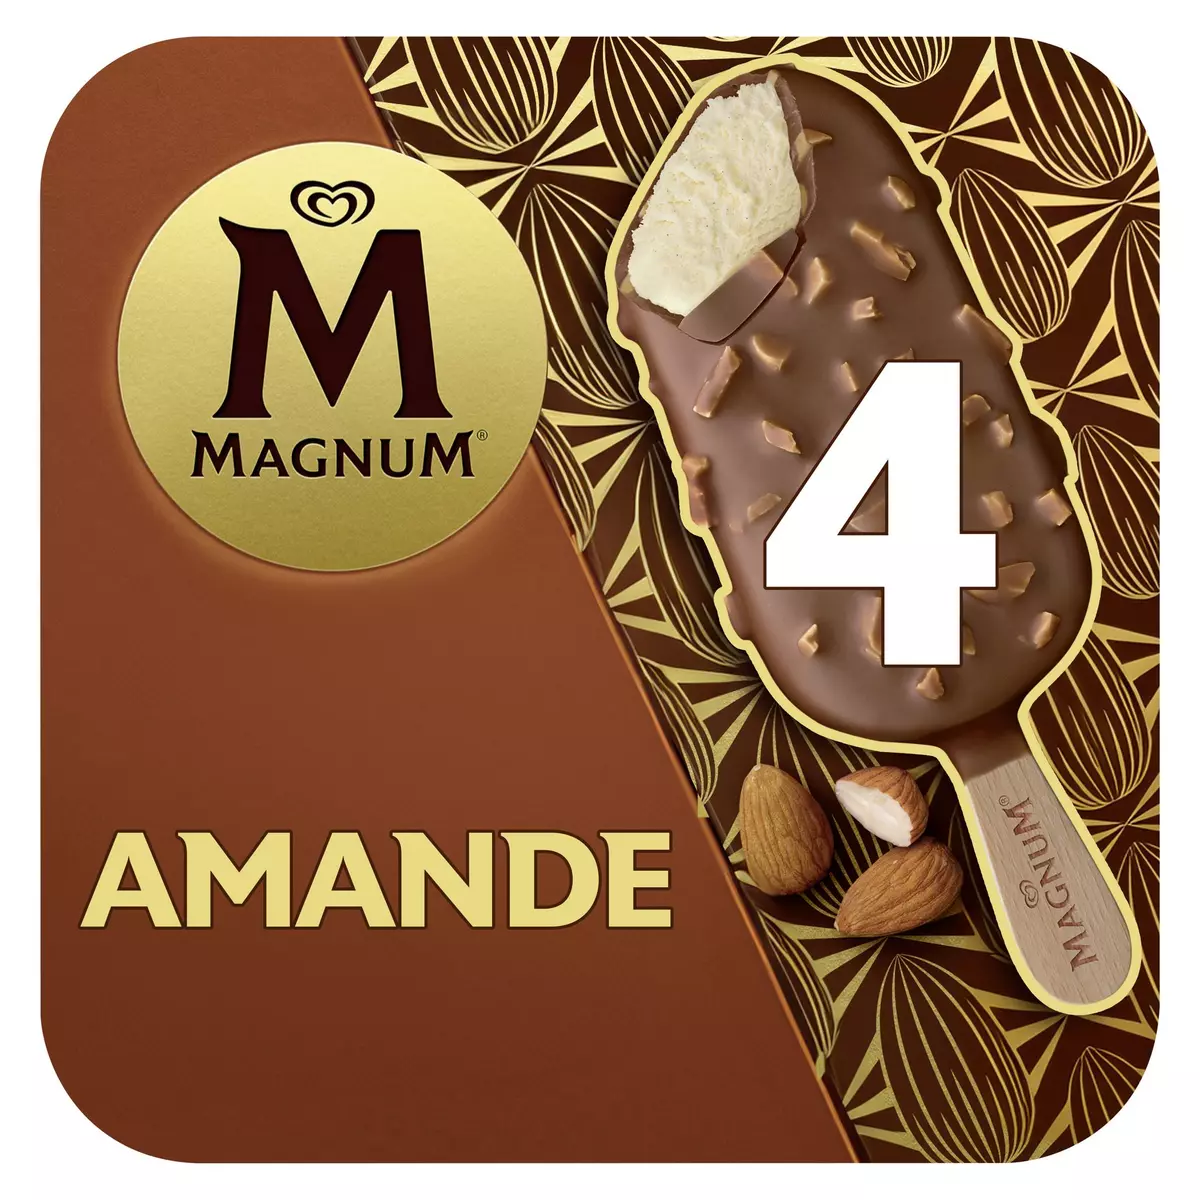 MAGNUM Bâtonnet glacé vanille chocolat et amandes 4 pièces 300g